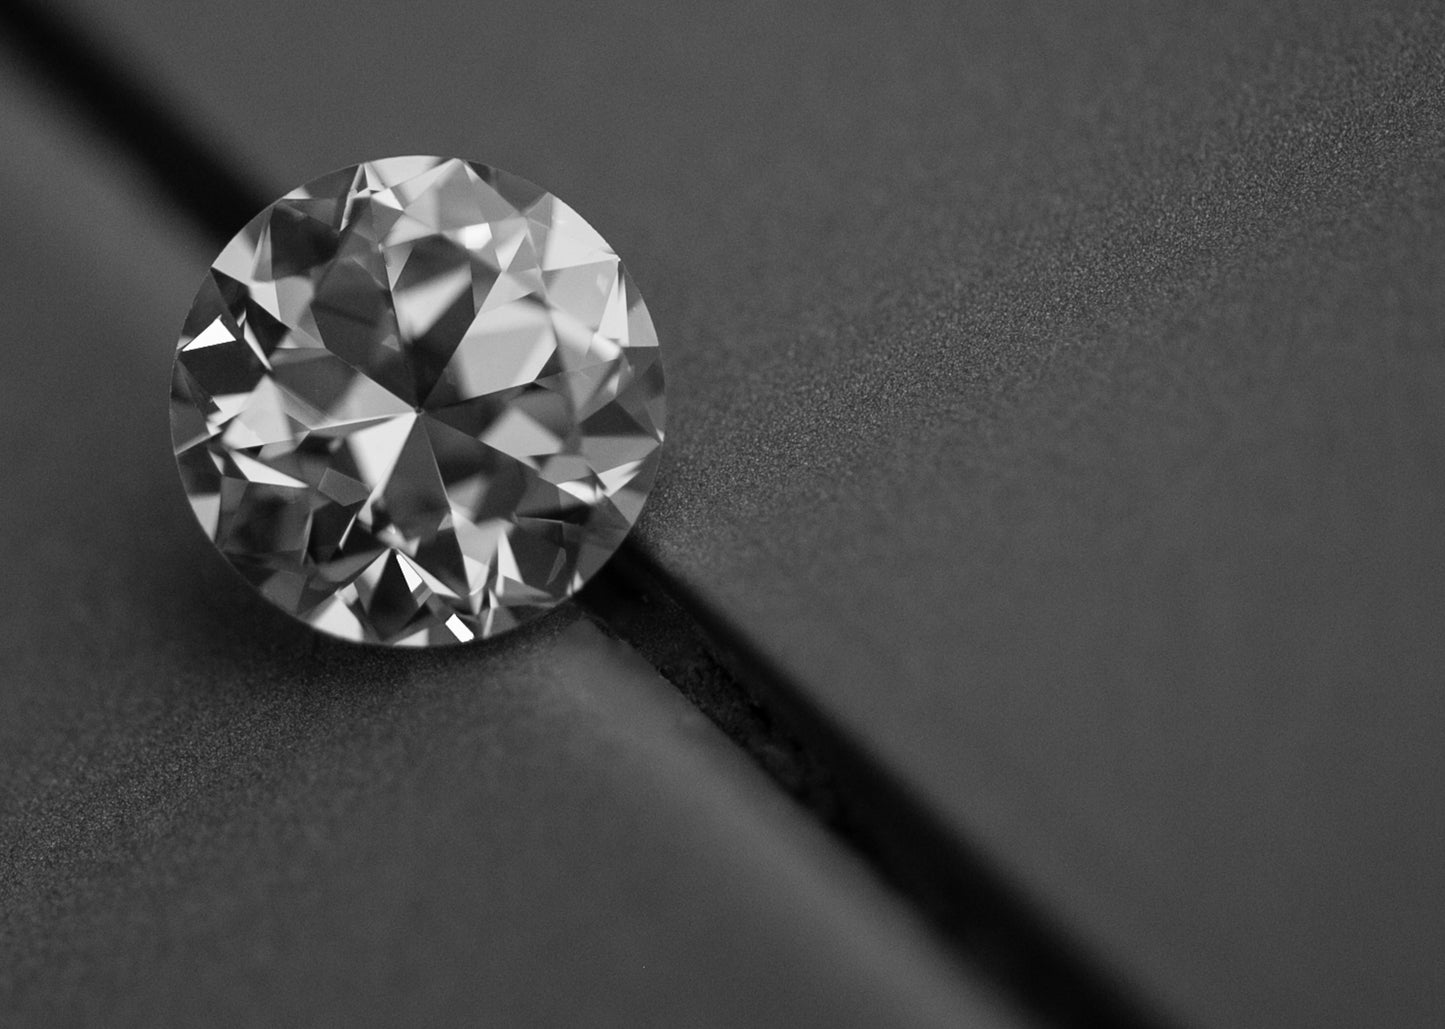 Appraisal - Loose Diamond or Diamond Jewelry